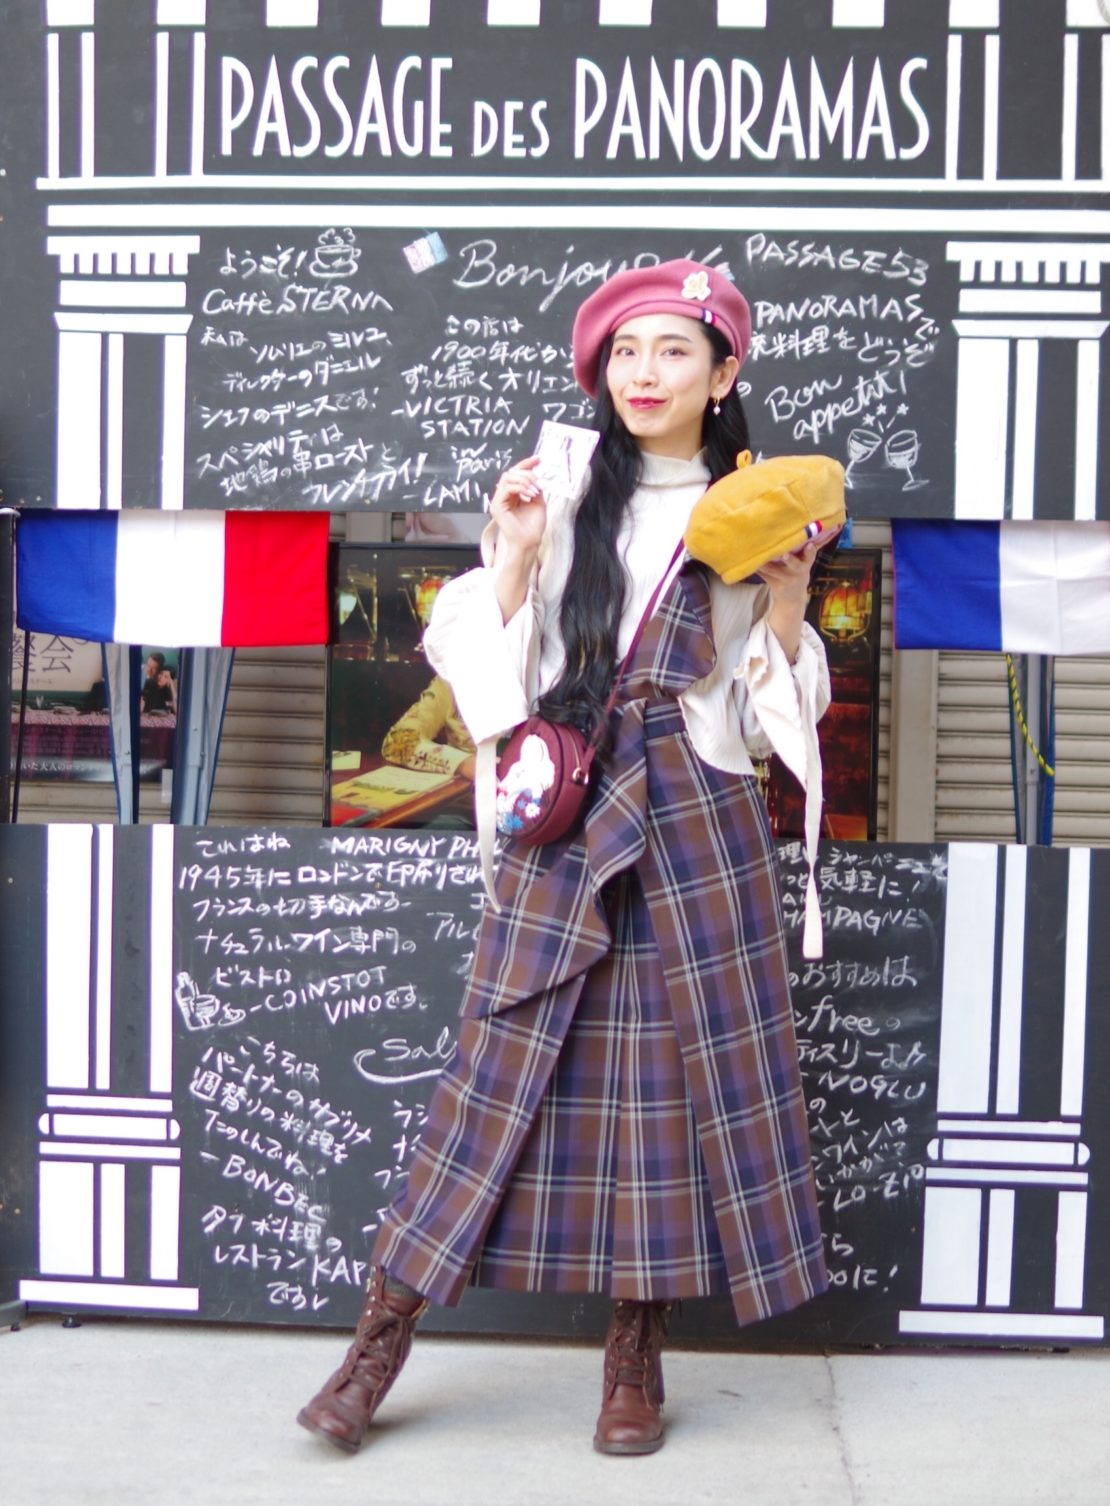 世界中が憧れる「花の都・パリ」の魅力が名古屋に集う2日間！「円頓寺 秋のパリ祭2019」に行ってみない？